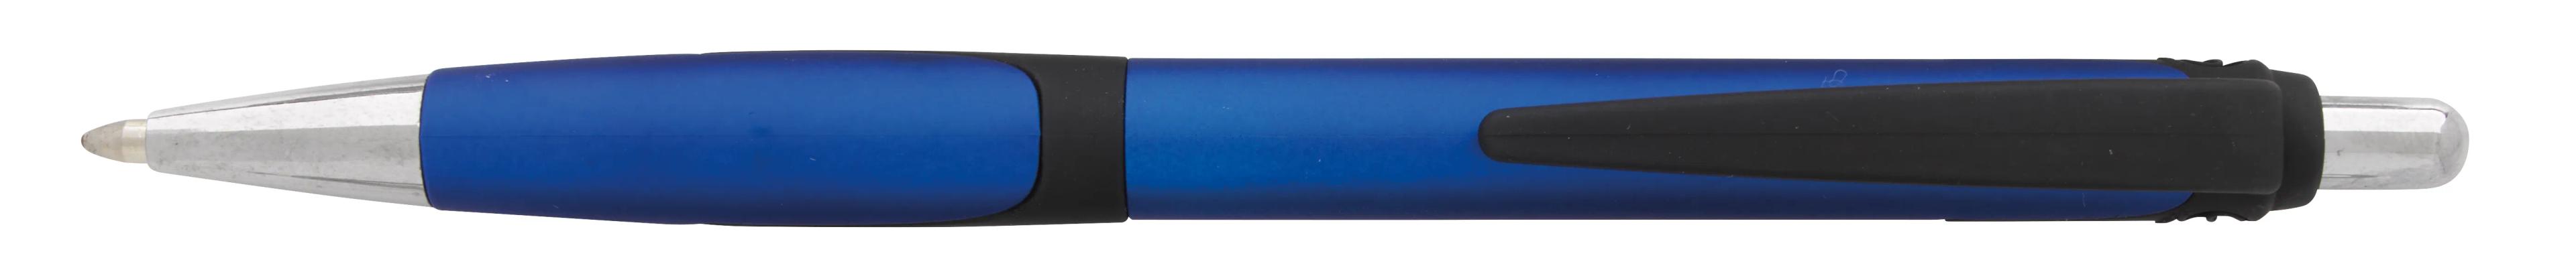 Souvenir® Toro Pen 21 of 31